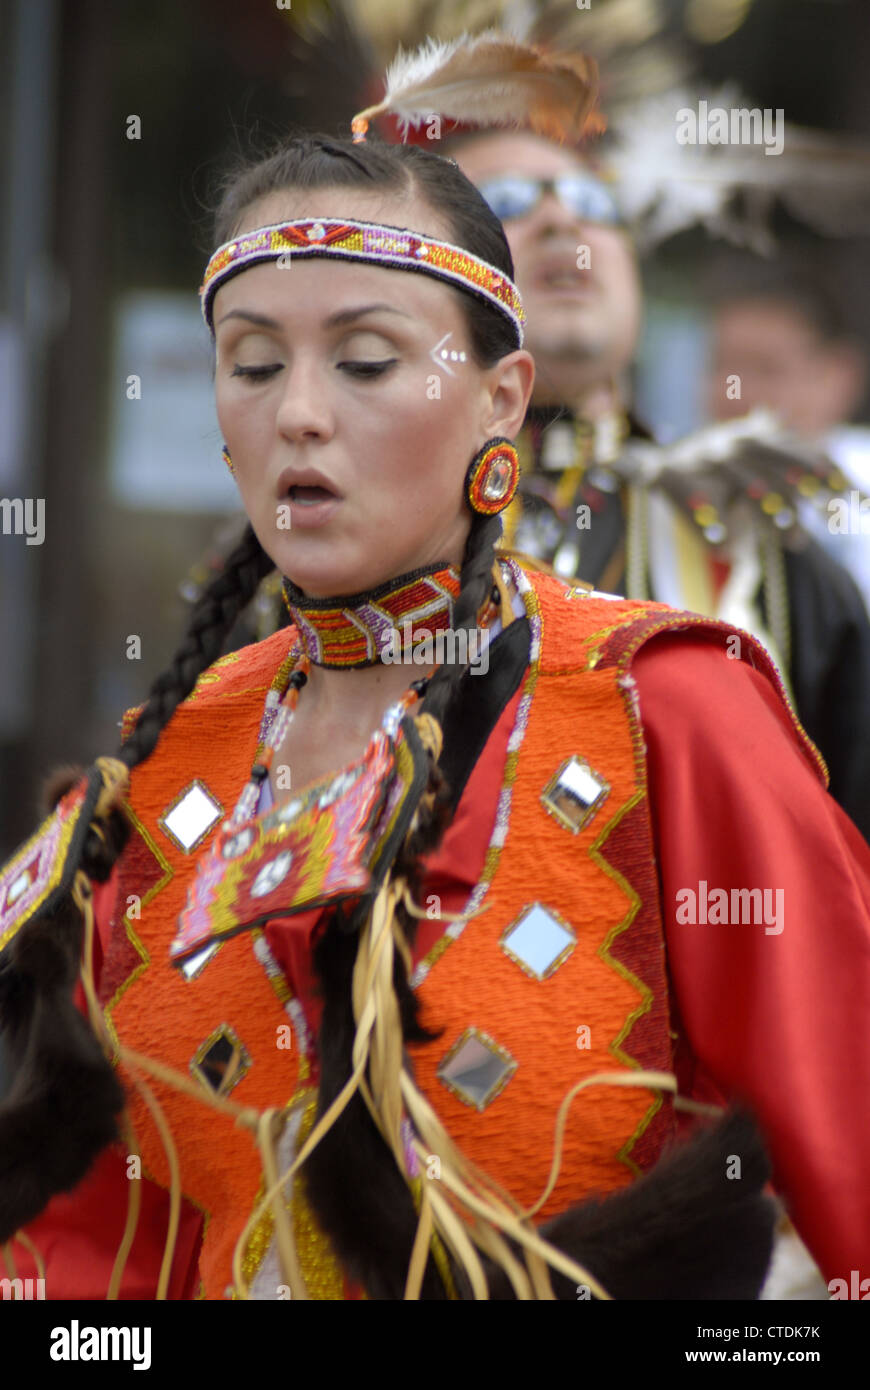 Dancer at Millbrook Aboriginal Day, Nova Scotia Stock Photo